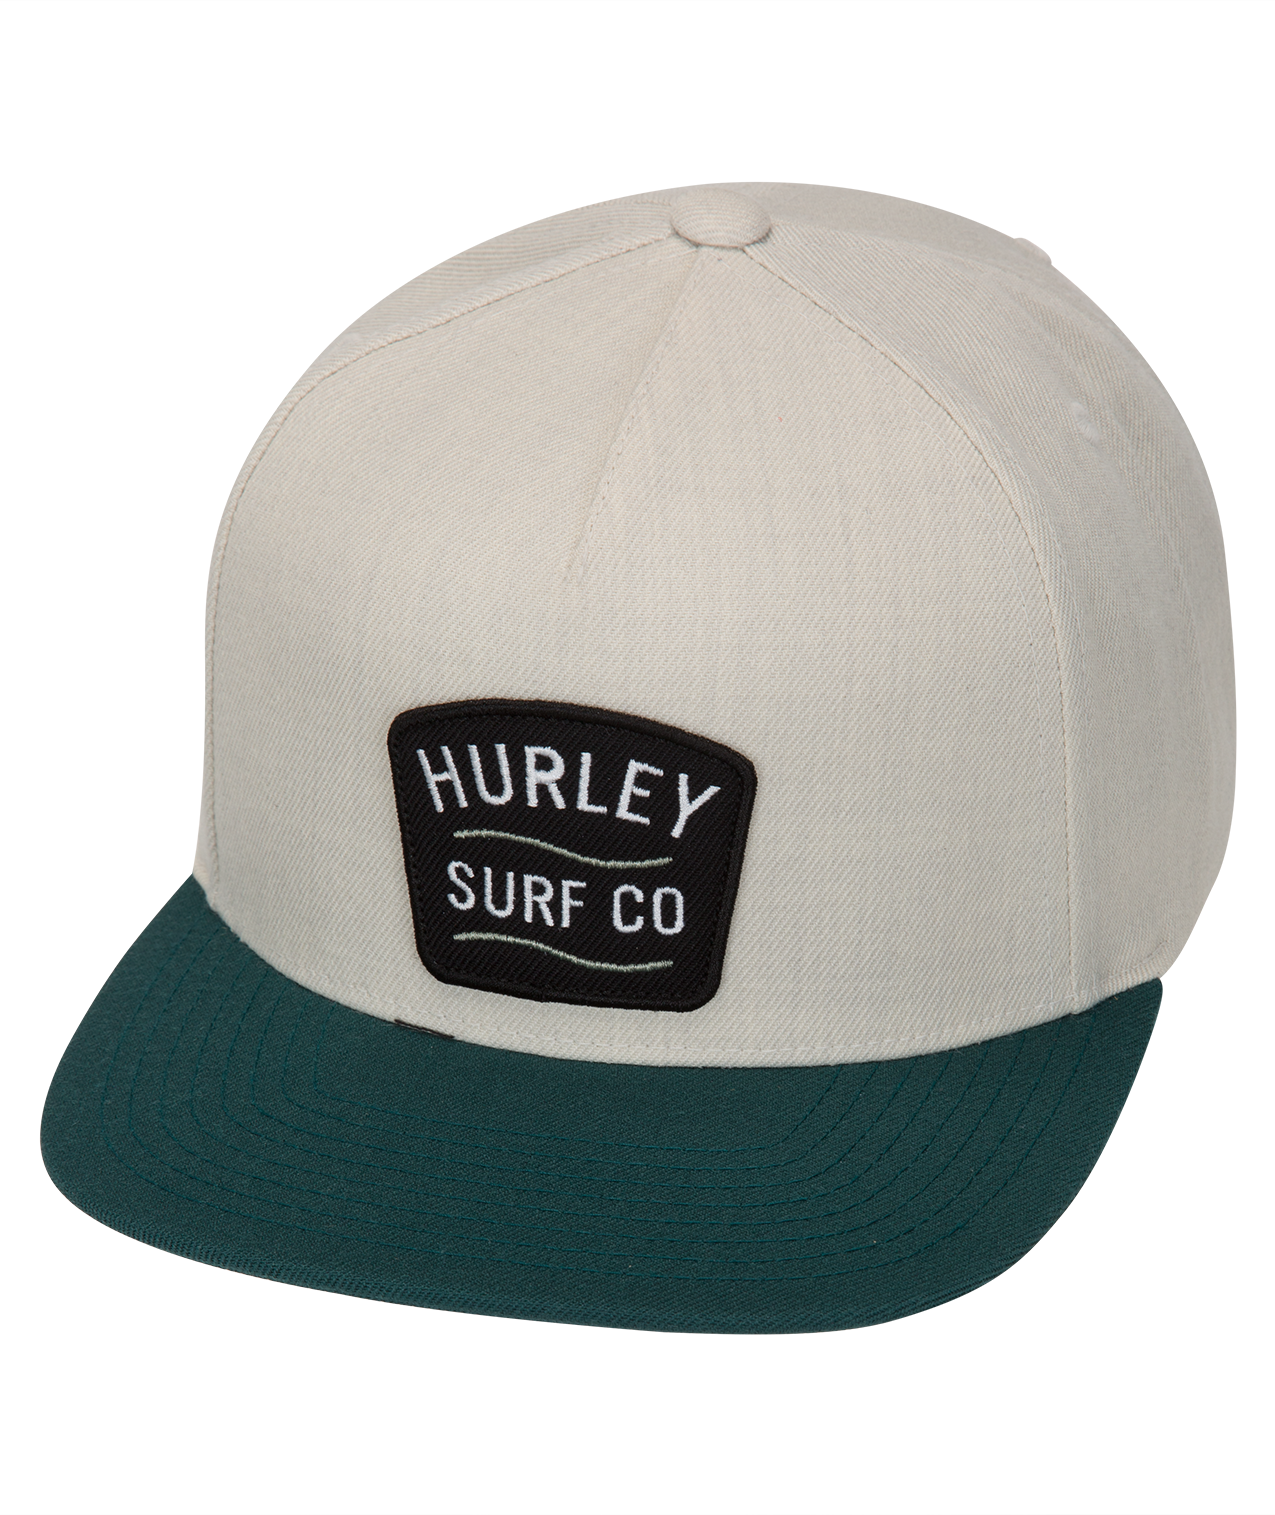 HURLEY M DERBY HAT 339 AV4725